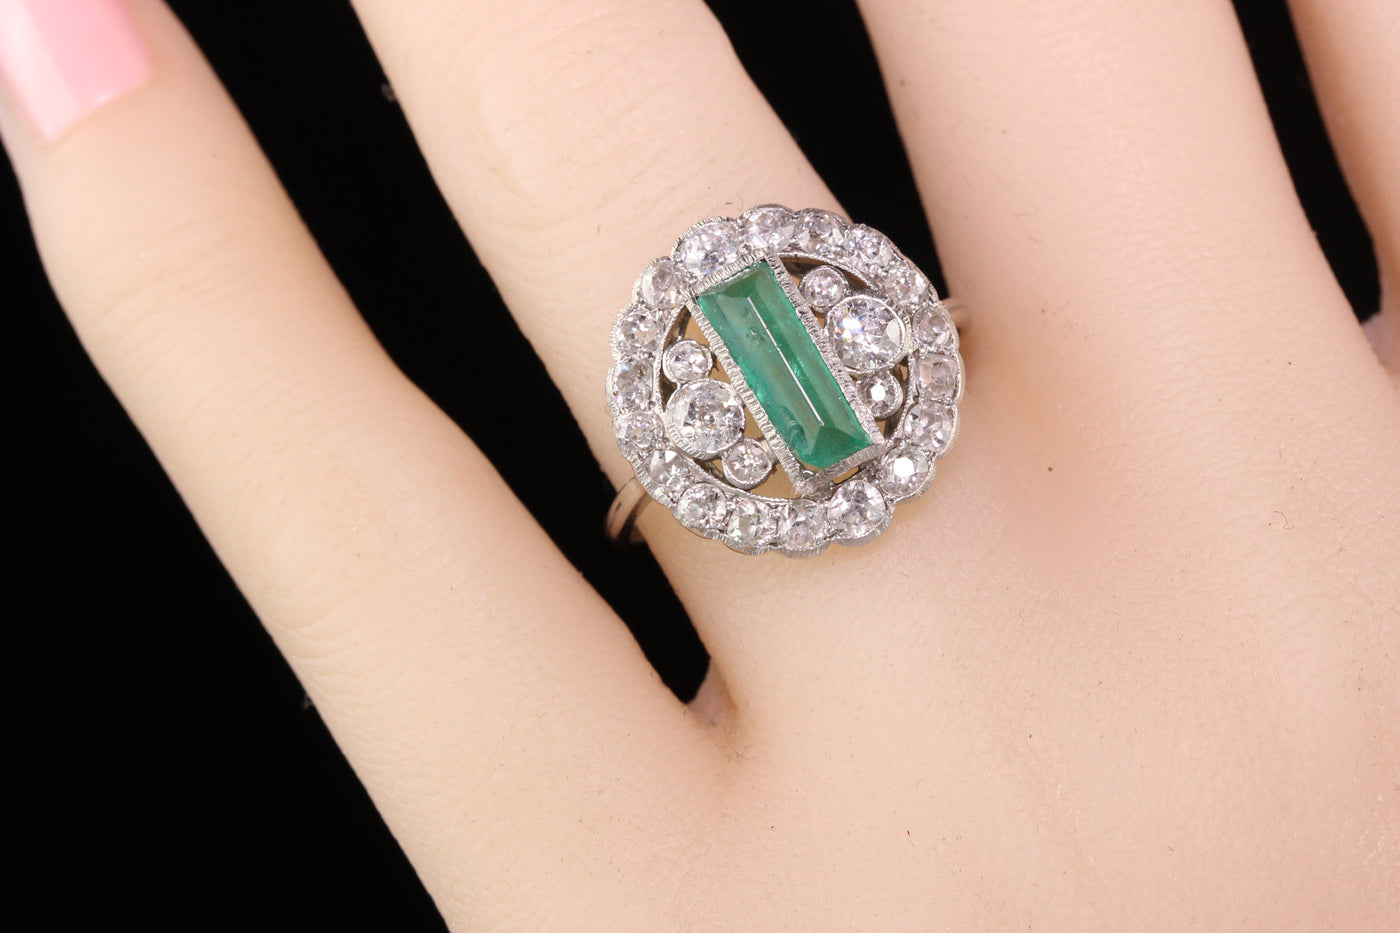 Antique Art Deco Platinum Diamond and Emerald Cocktail Ring